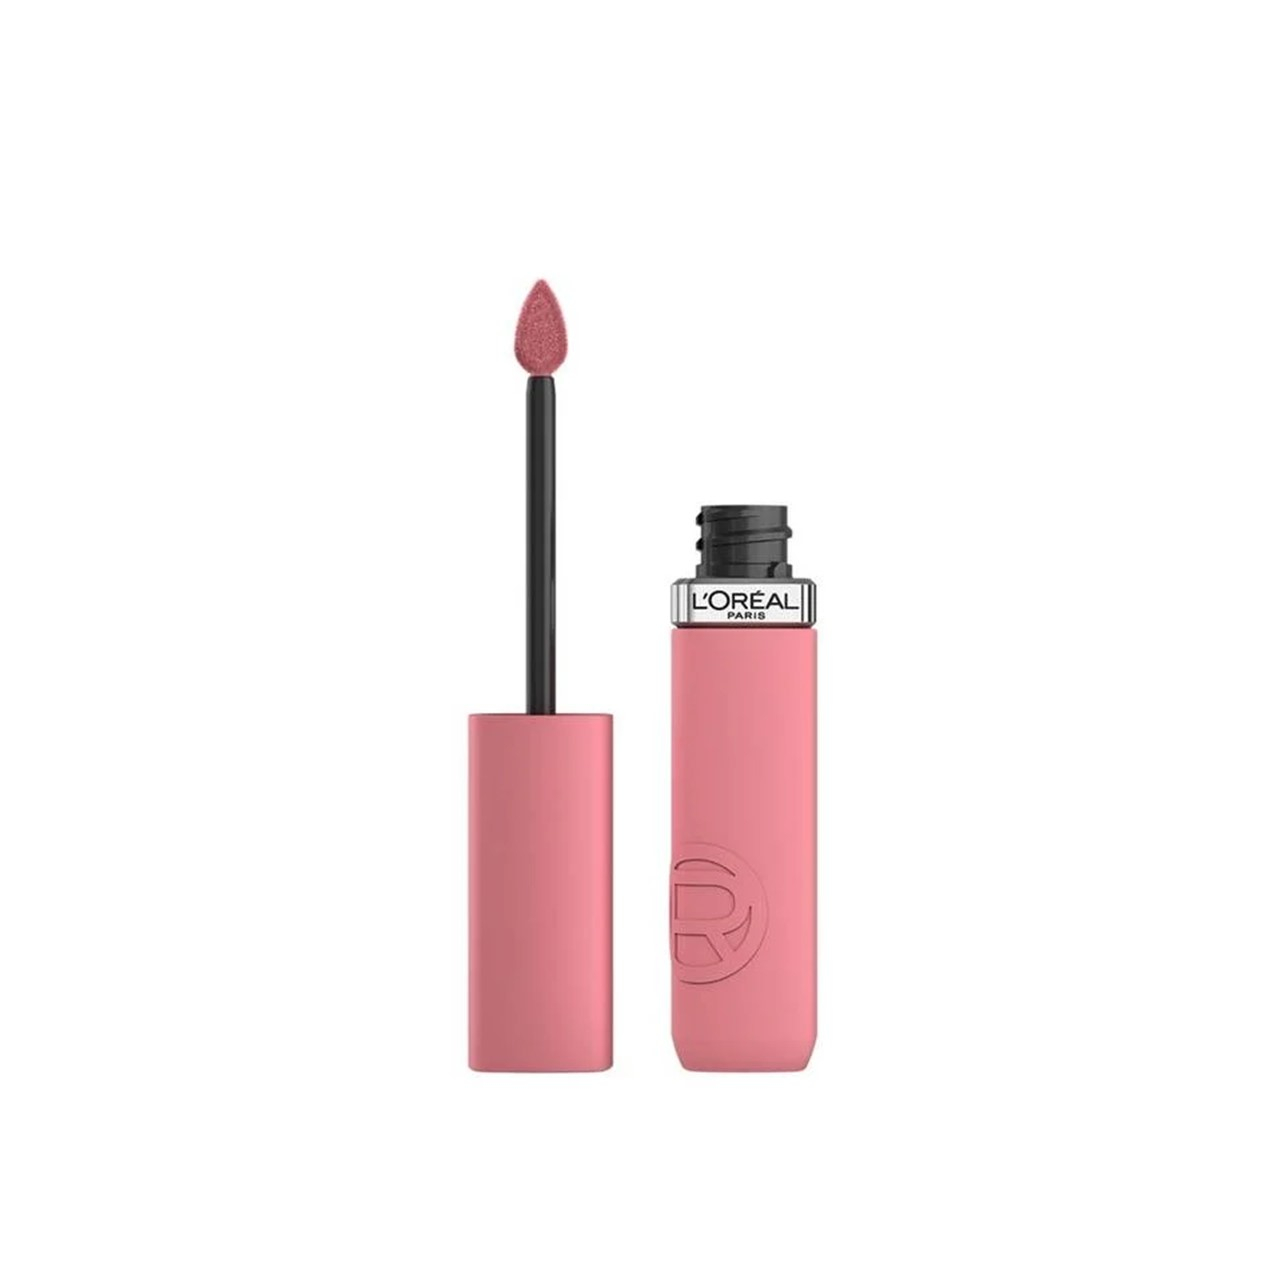 L'Oréal Paris Infallible Matte Resistance Liquid Lipstick 200 Lipstick & Chill 5ml